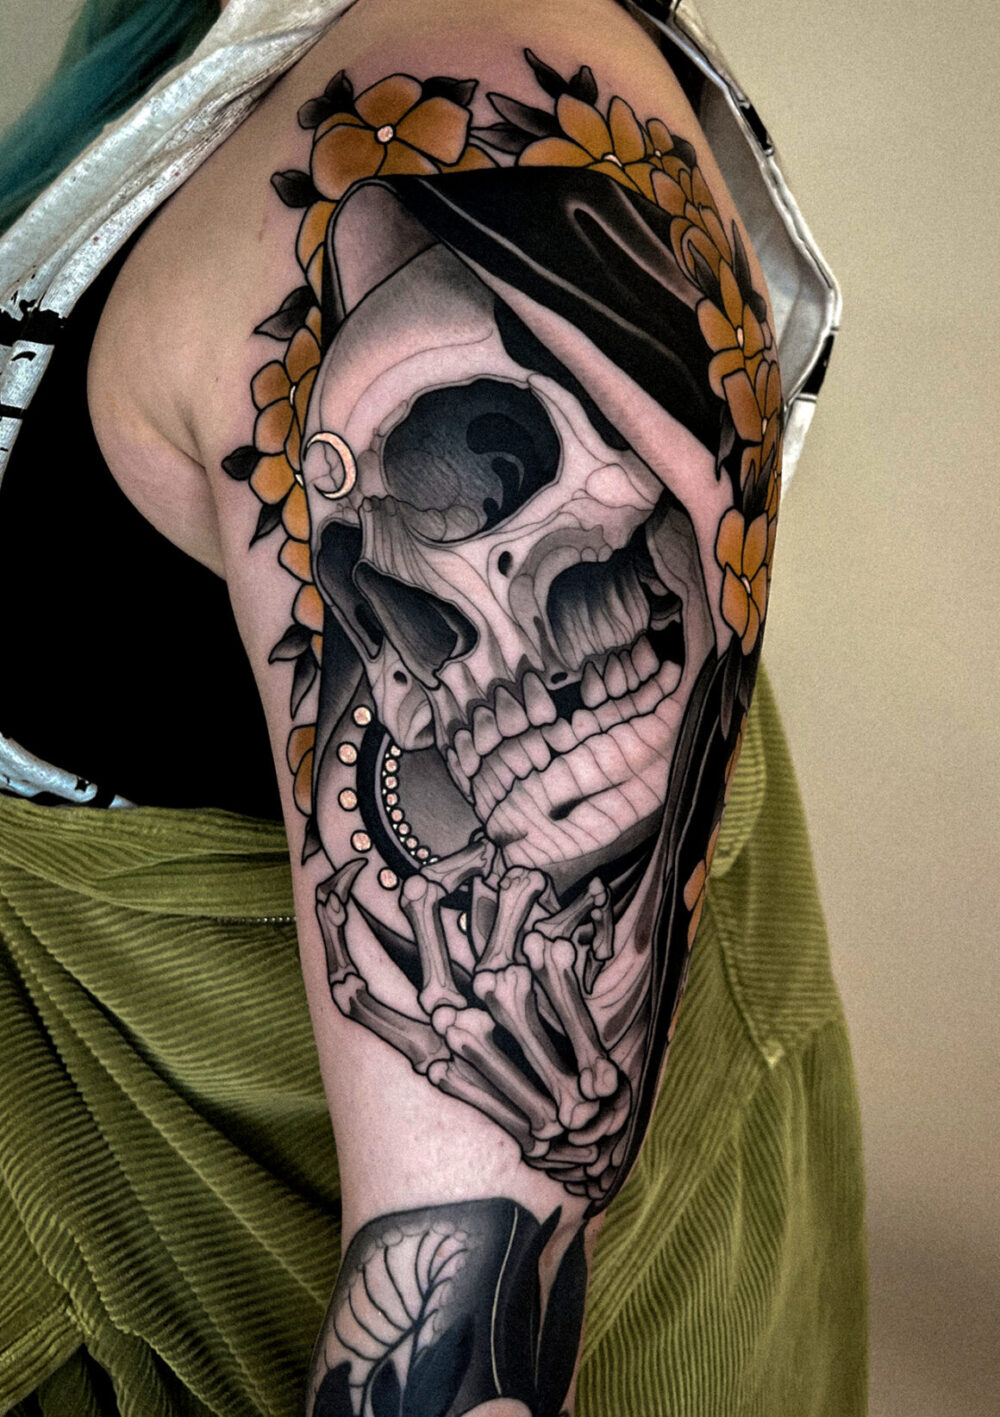 Tattoo by Robin Kemper, @robin.kemper.tattoo